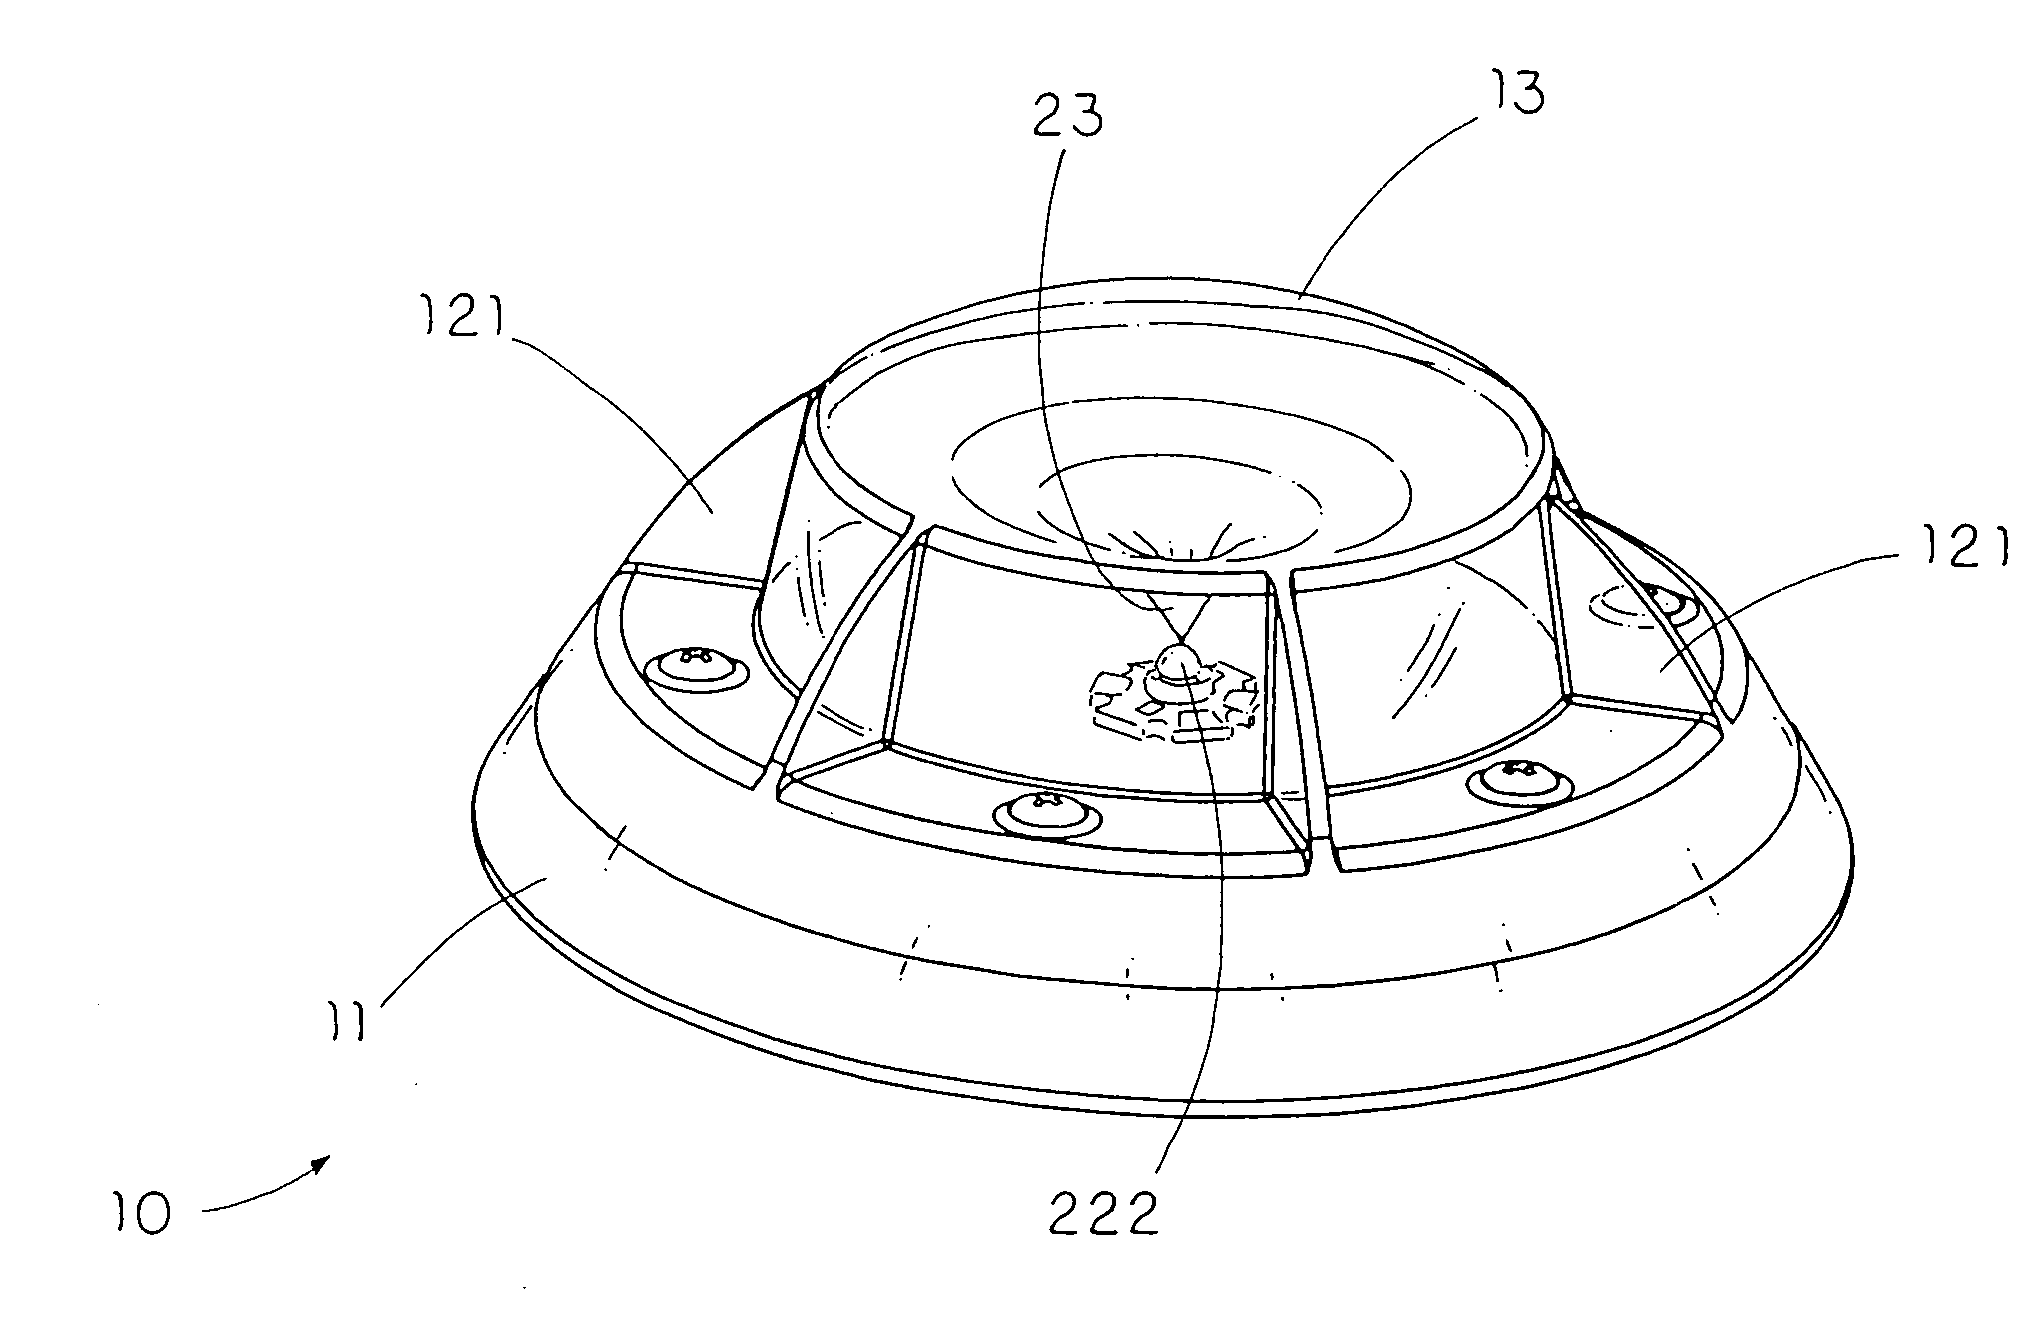 Portable radial projection light source arrangement